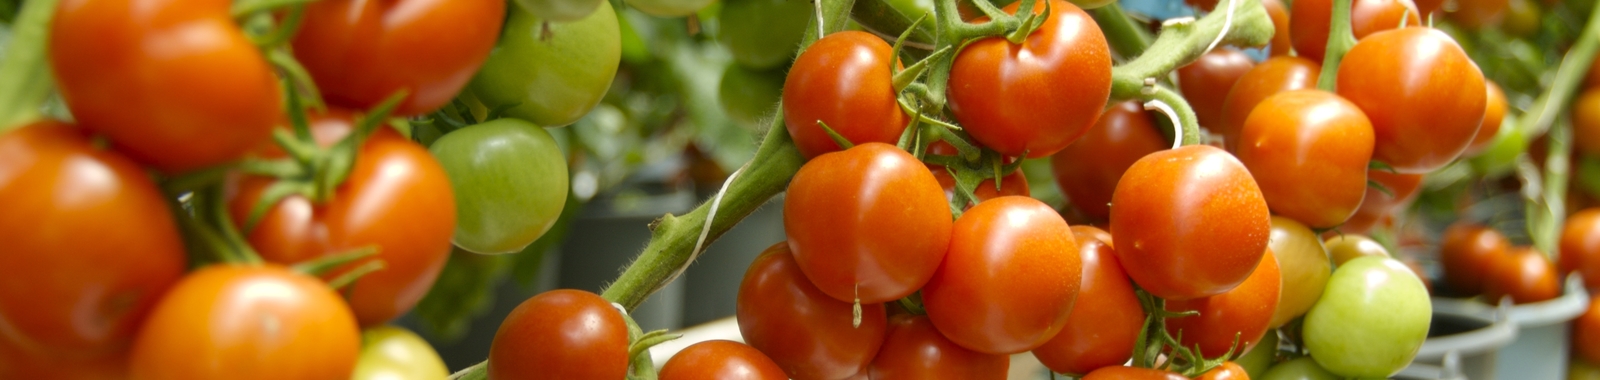 Exigencias del mercado tomates